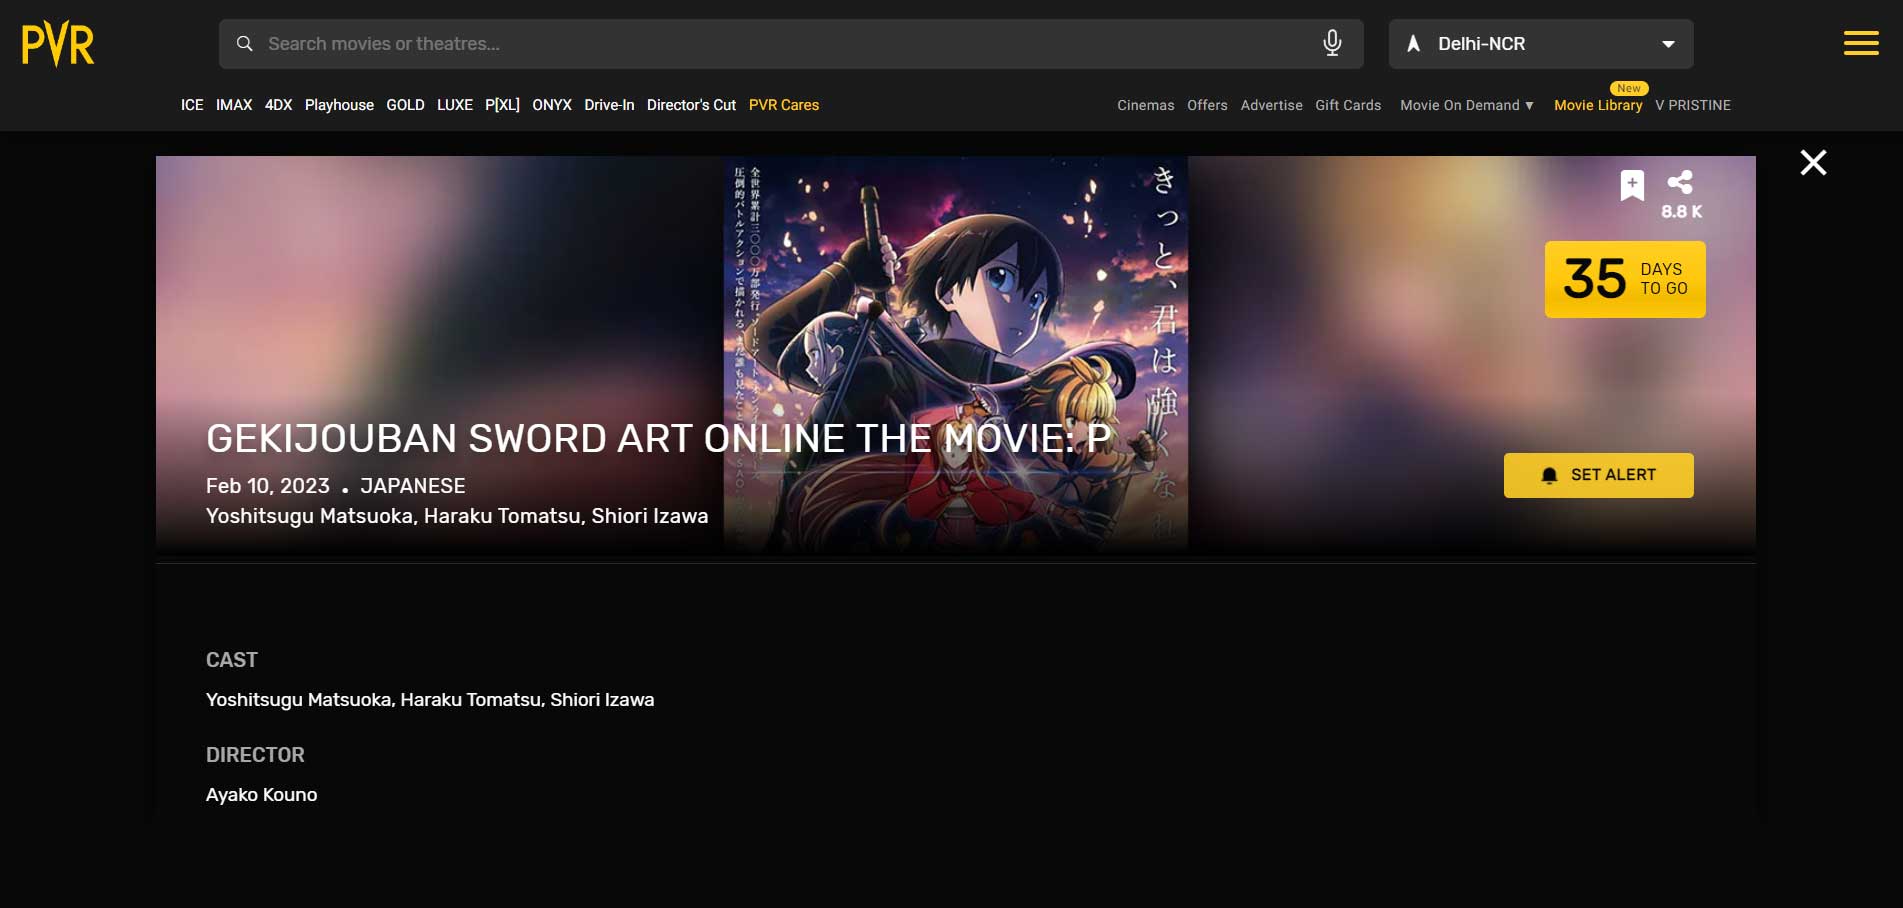 Sword Art Online Movie Release In India